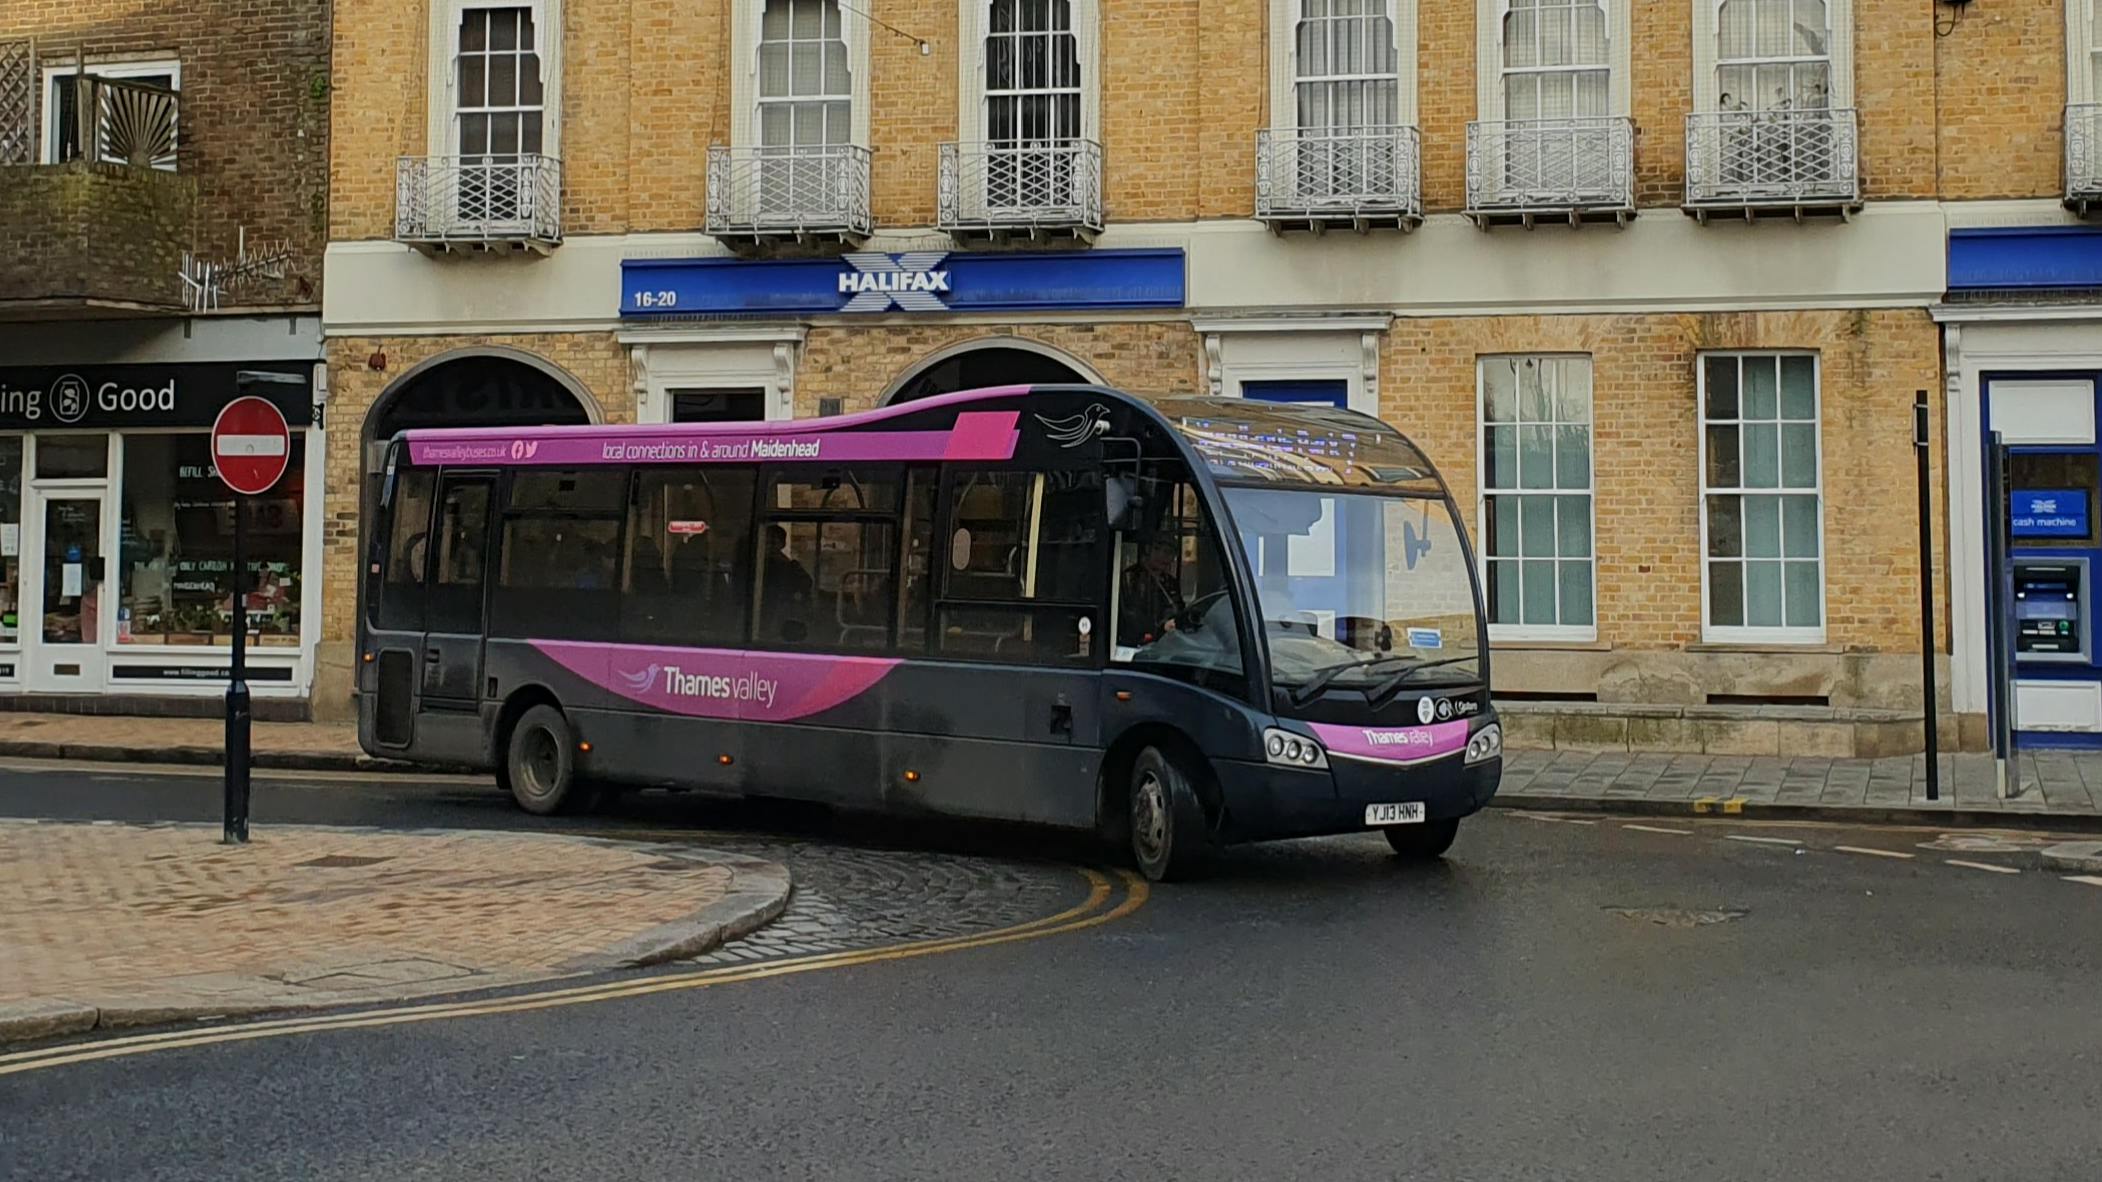 A bus in Maidenhead